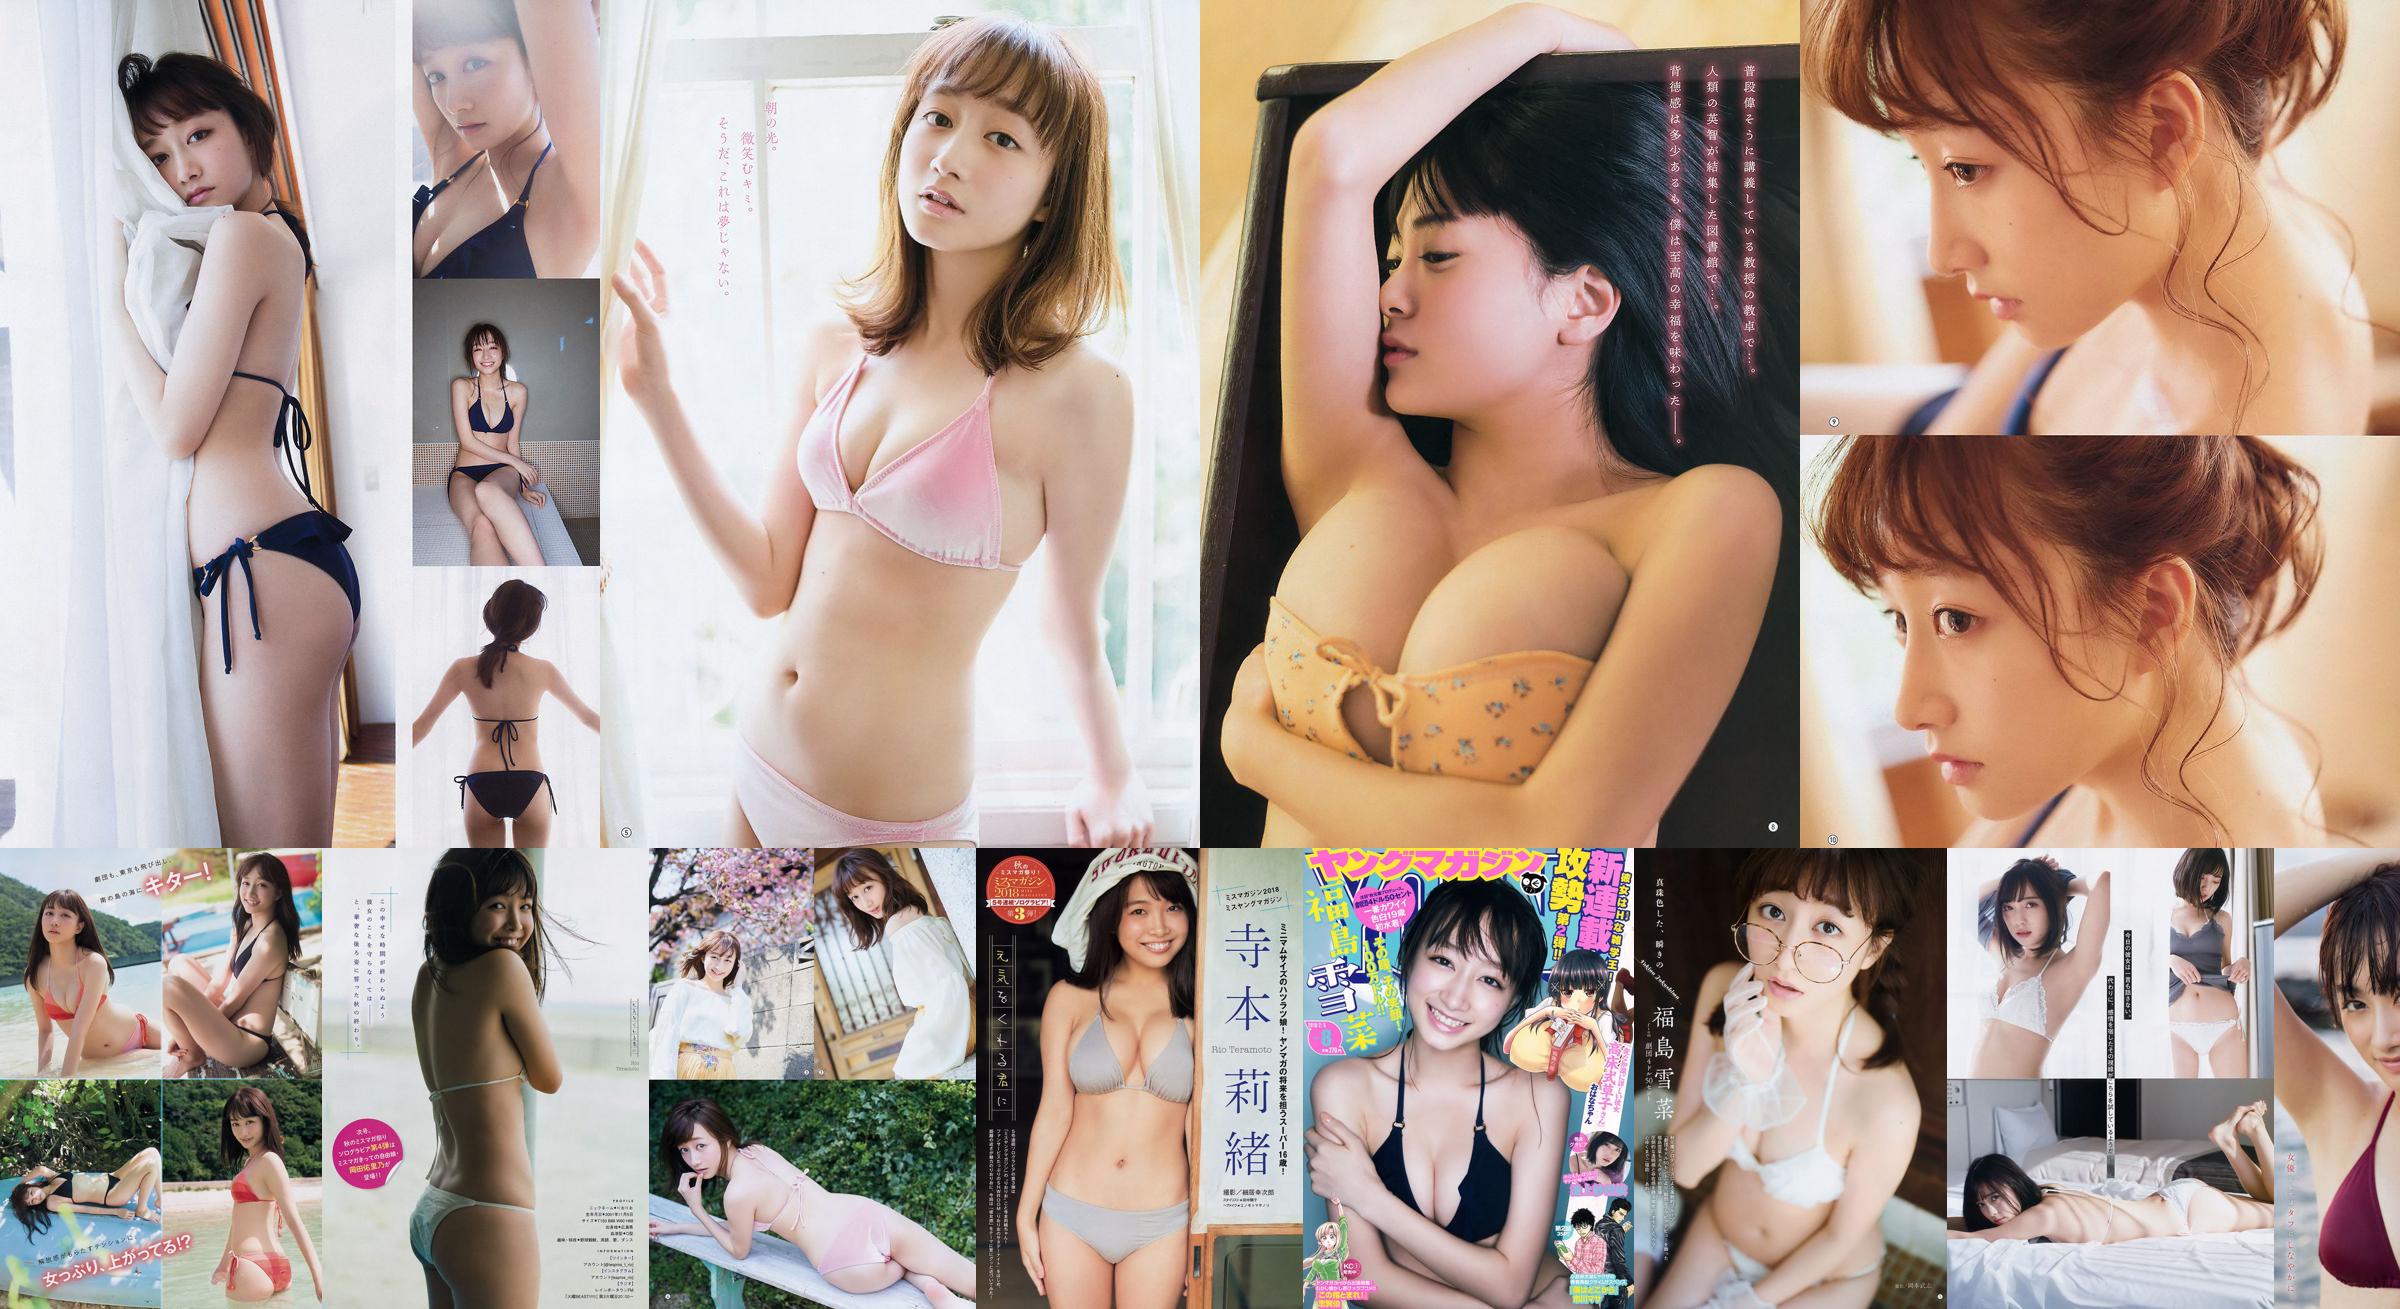 [Young Gangan] Yukina Fukushima RaMu 2018 No.10 Photograph No.1a44d0 Page 1